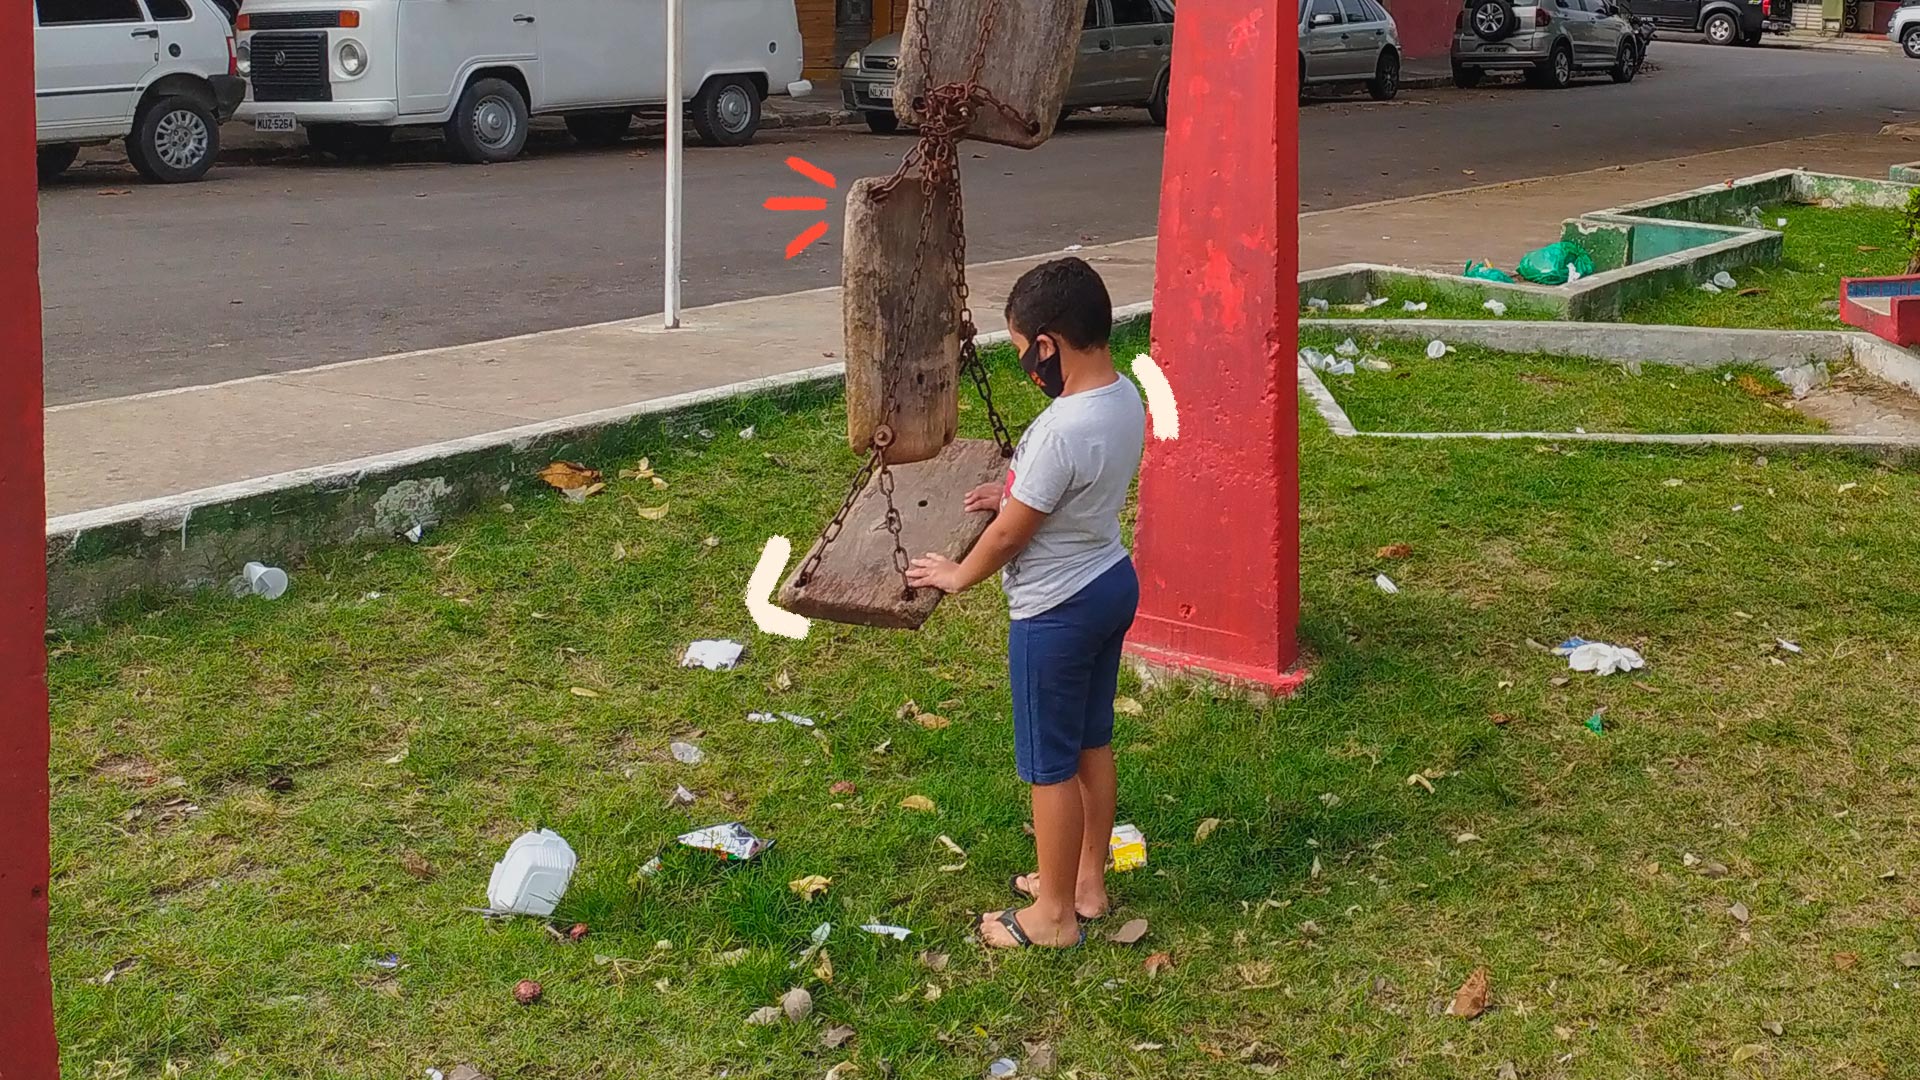 Direito à cidade e crianças: um menino em uma praça, cheia de lixo ao redor, tentando brincar em um balanço formado por blocos de cimento